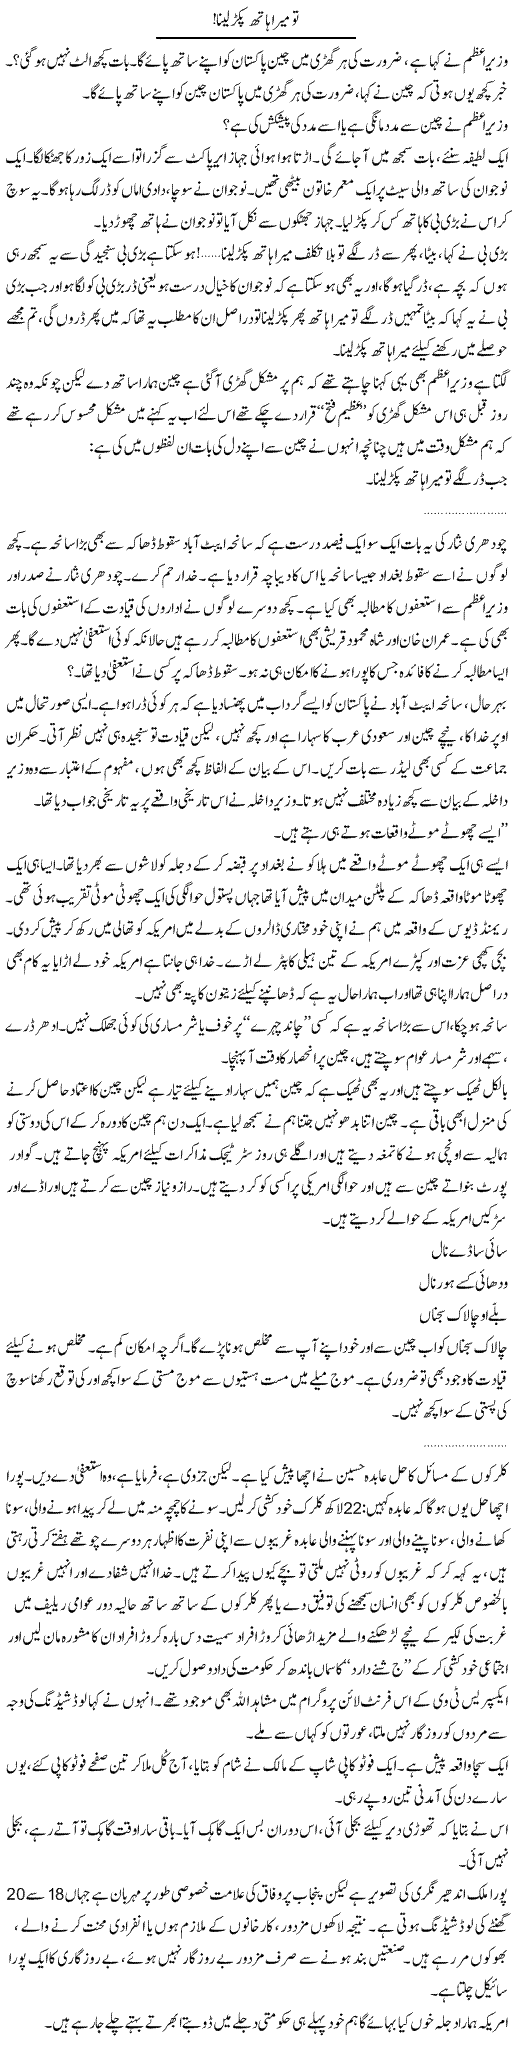 China Is With Pakistan Express Column Abdullah Tariq 10 May 2011